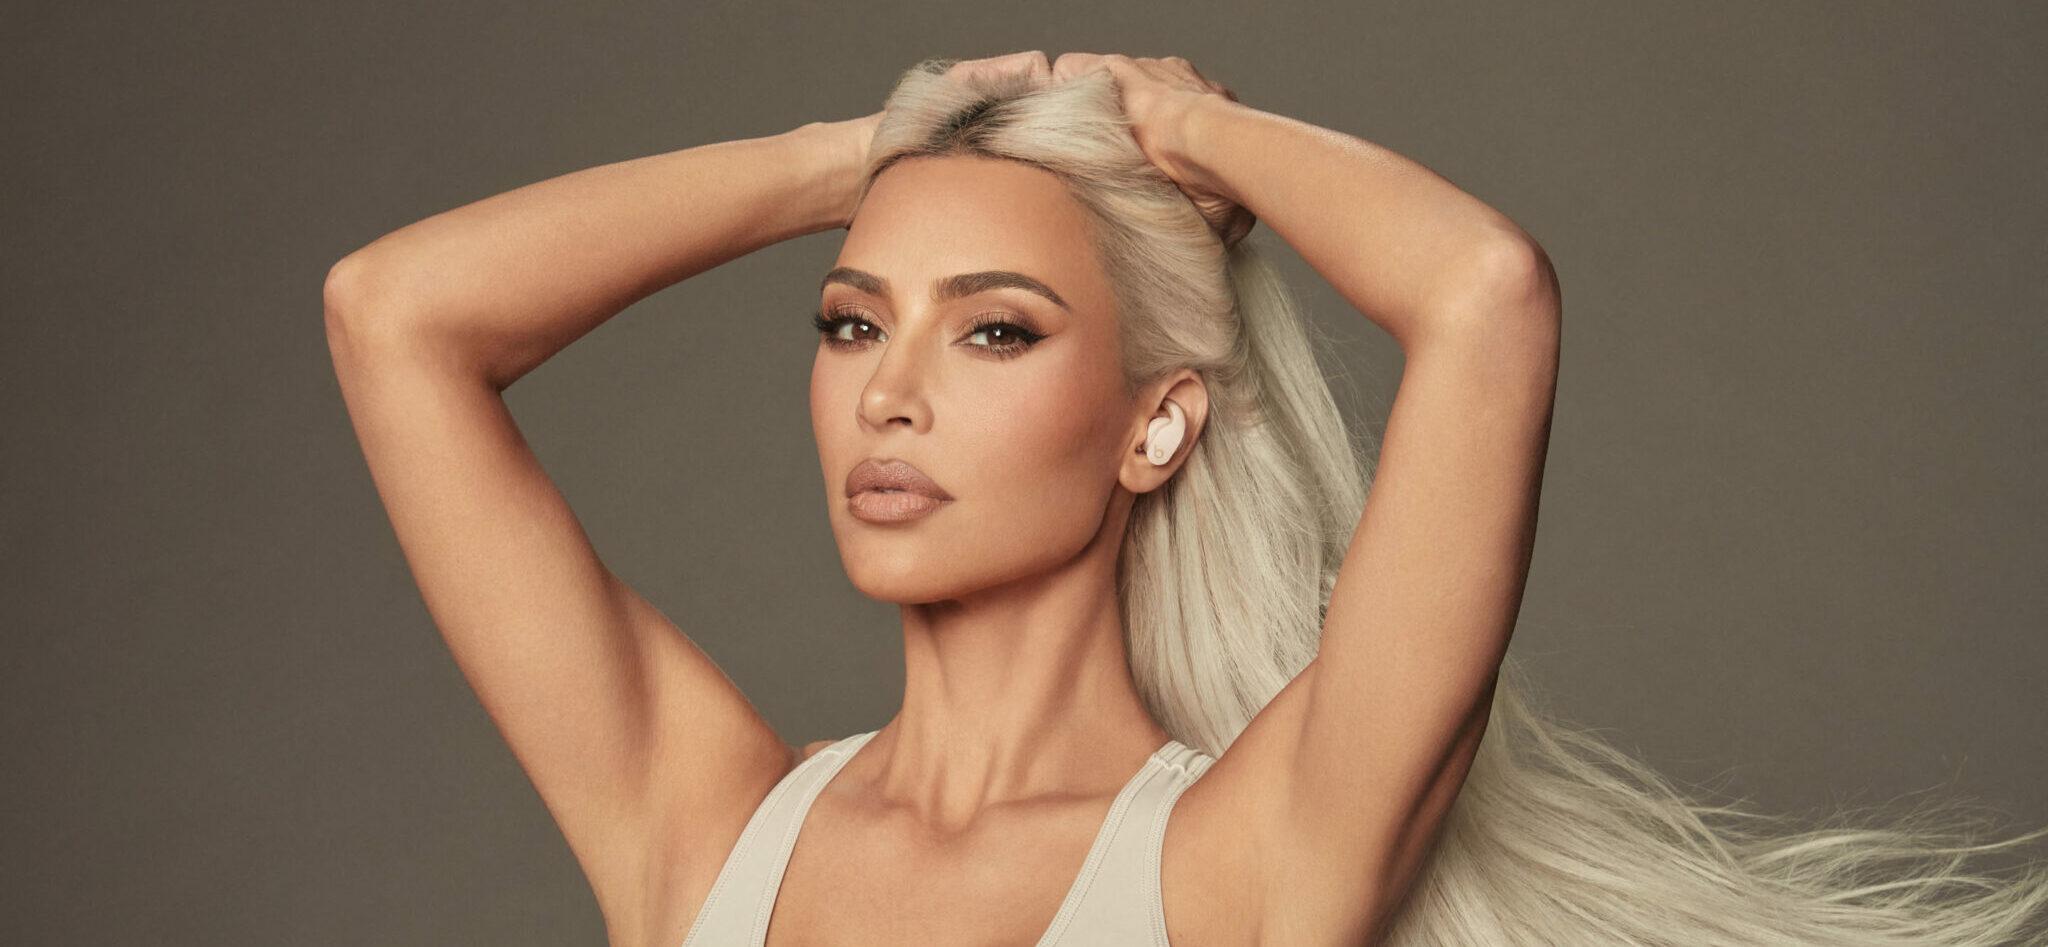 Kim Kardashian Is Back In The Gym After Secretly Breaking Her Shoulder